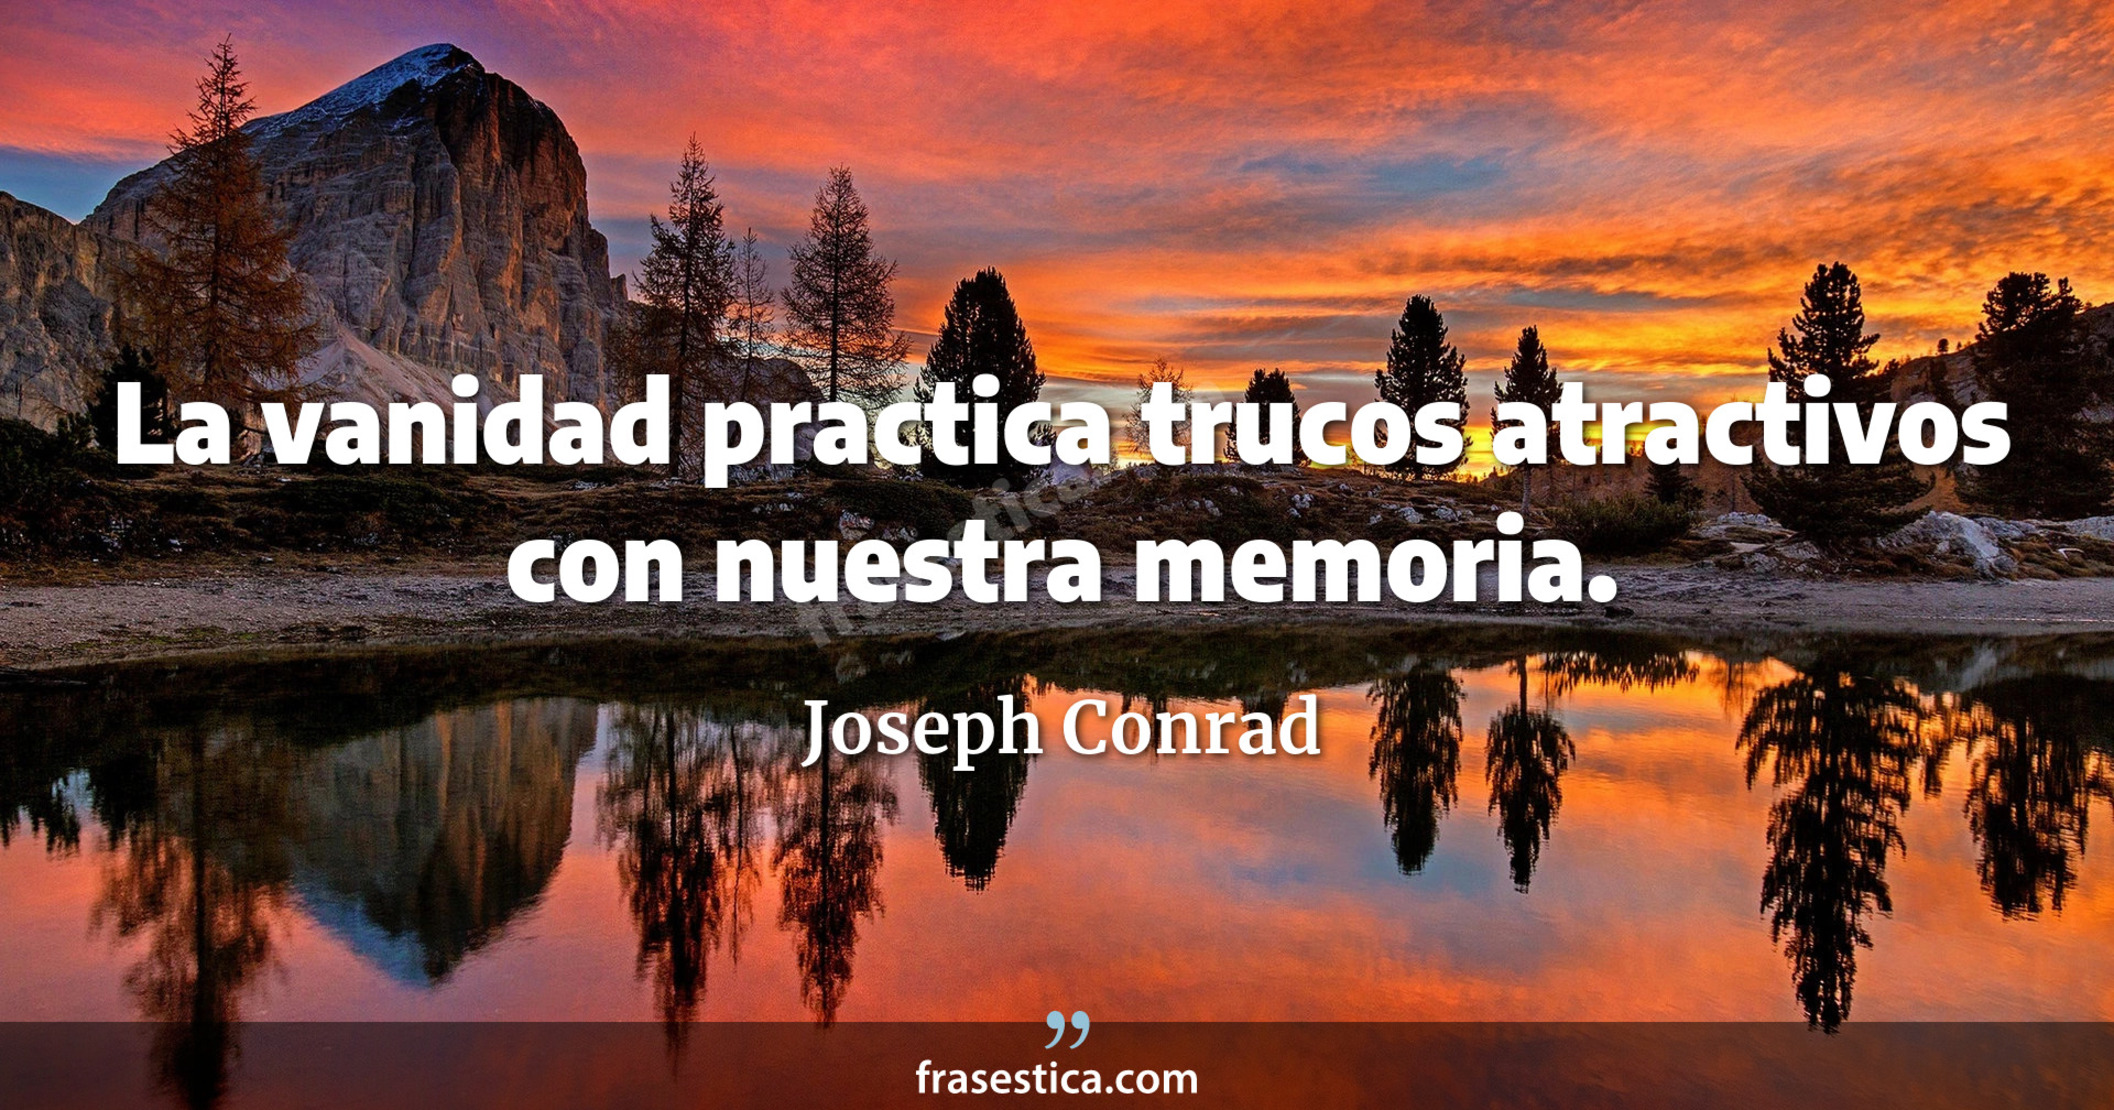 La vanidad practica trucos atractivos con nuestra memoria. - Joseph Conrad